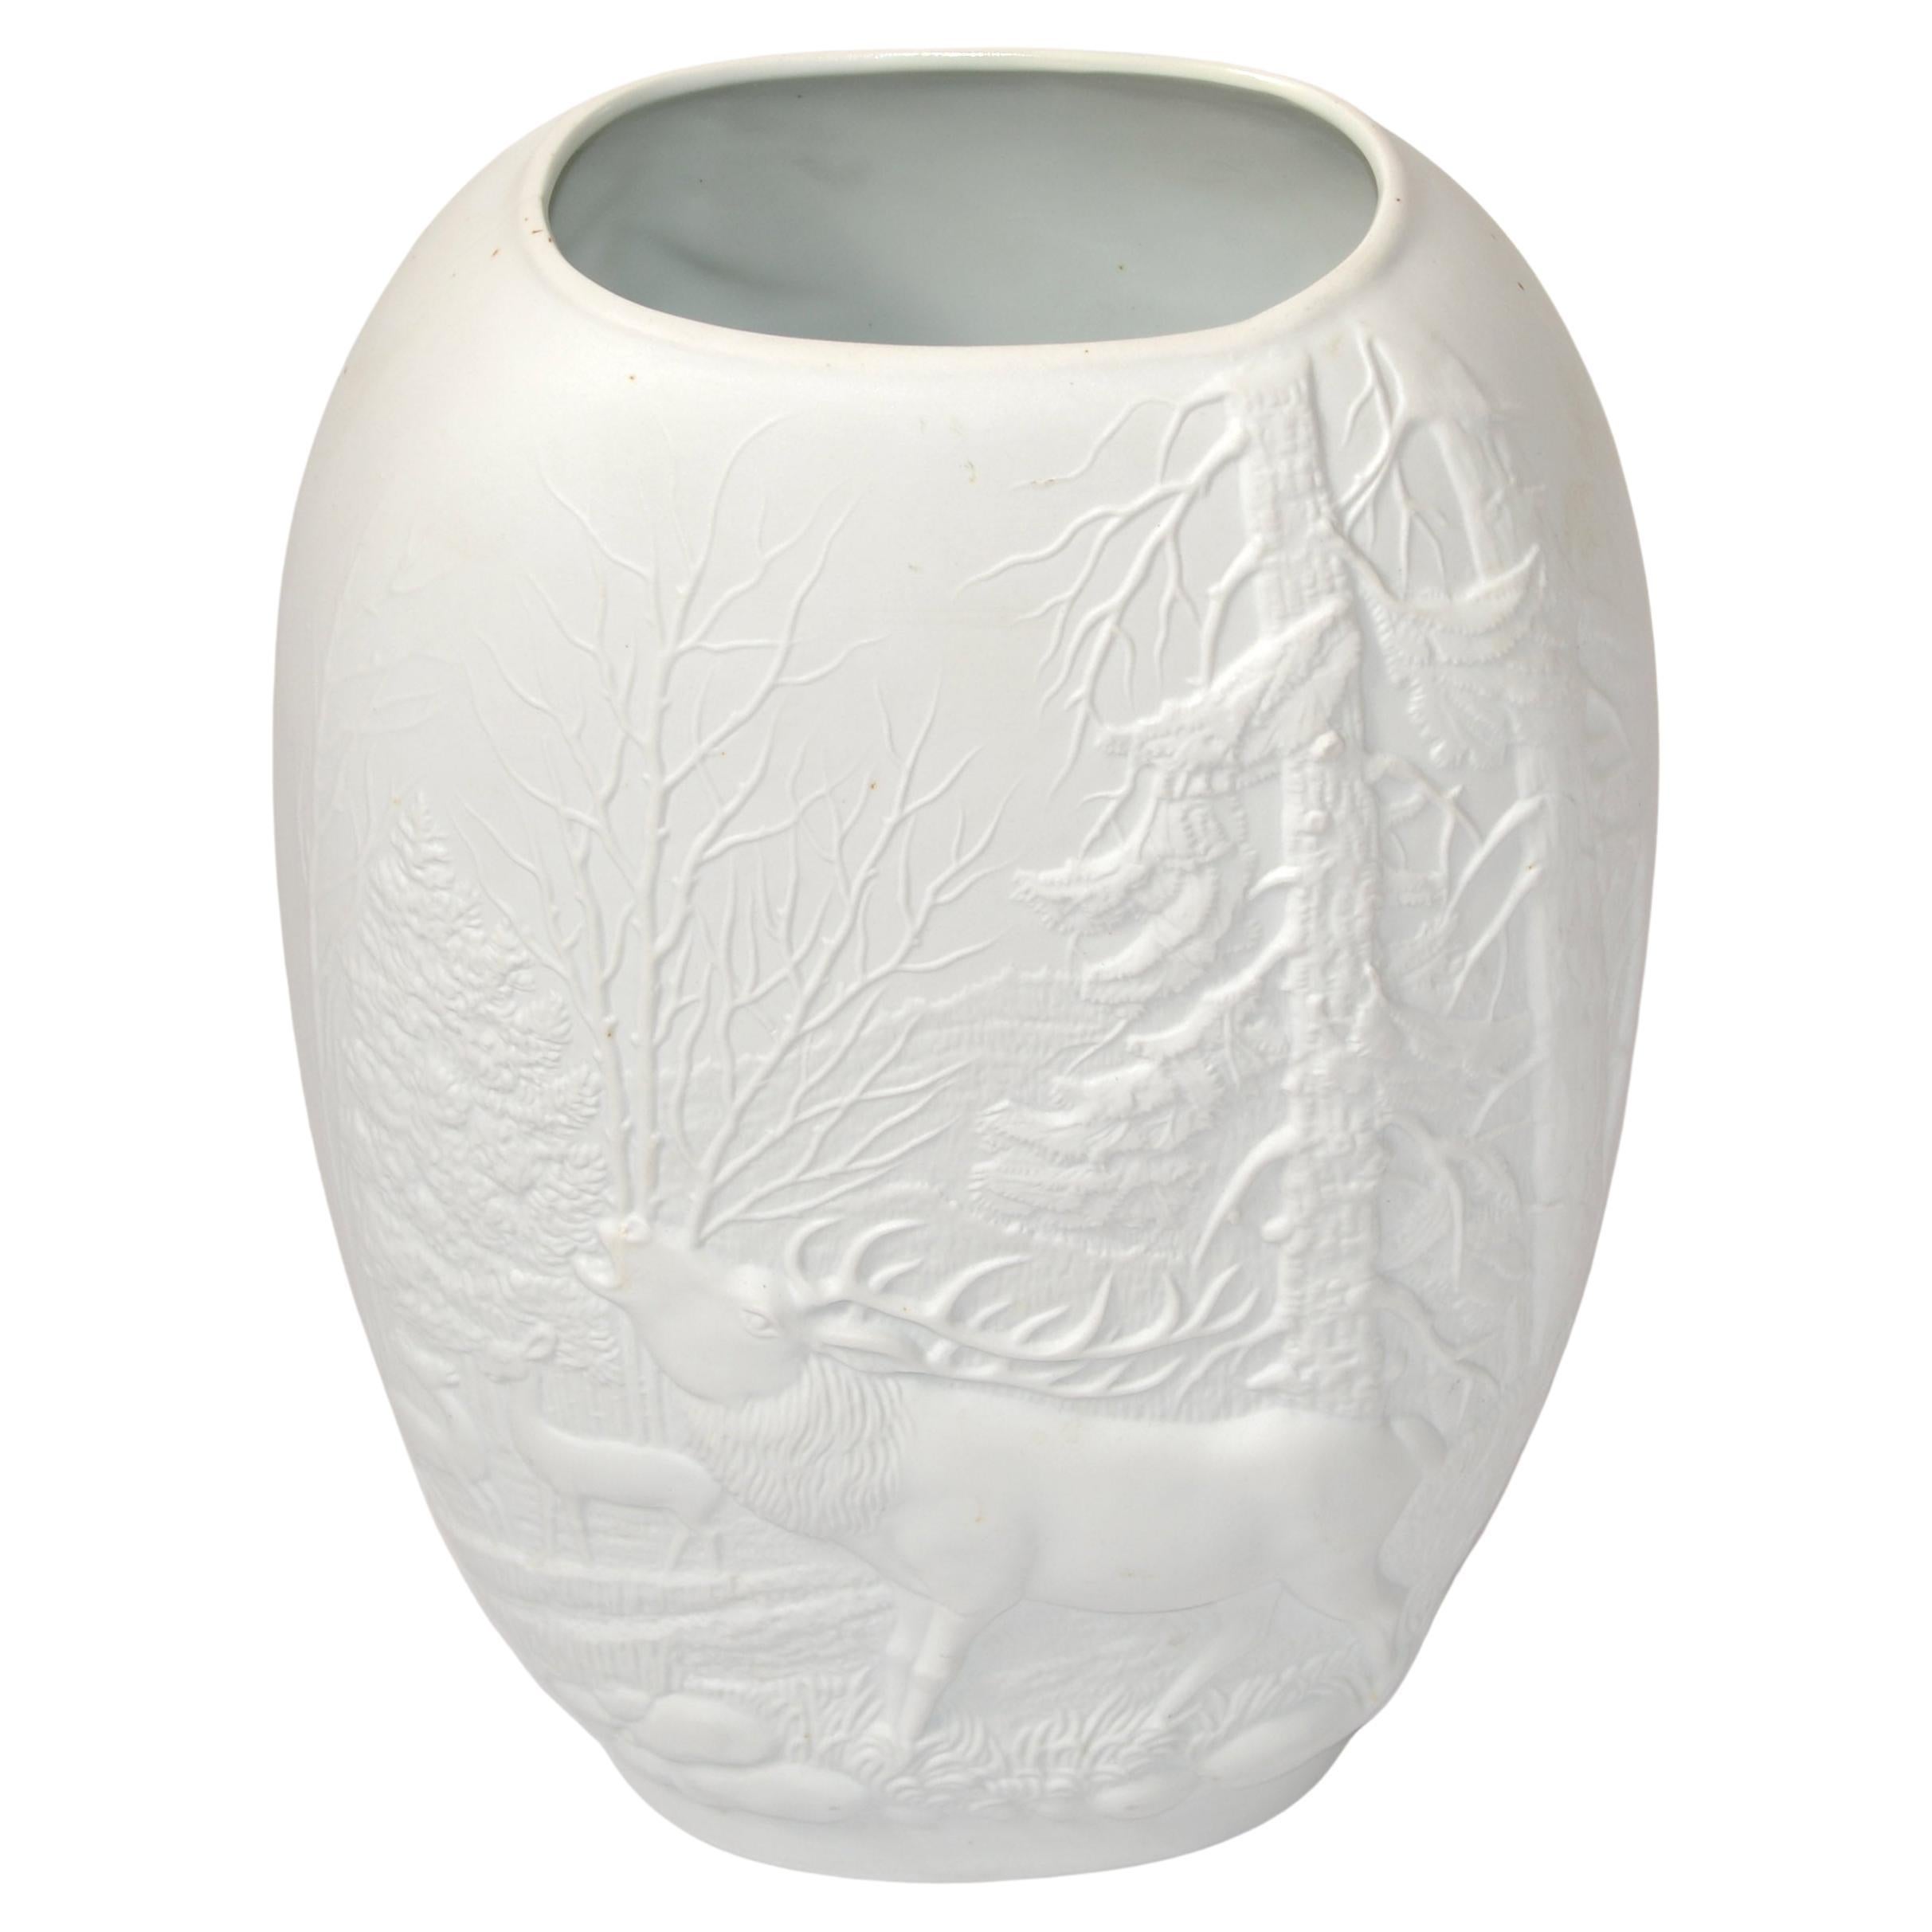 Bavaria Rosenthal White Bisque Flower Vase 2D Forrest Royal Porcelain Germany